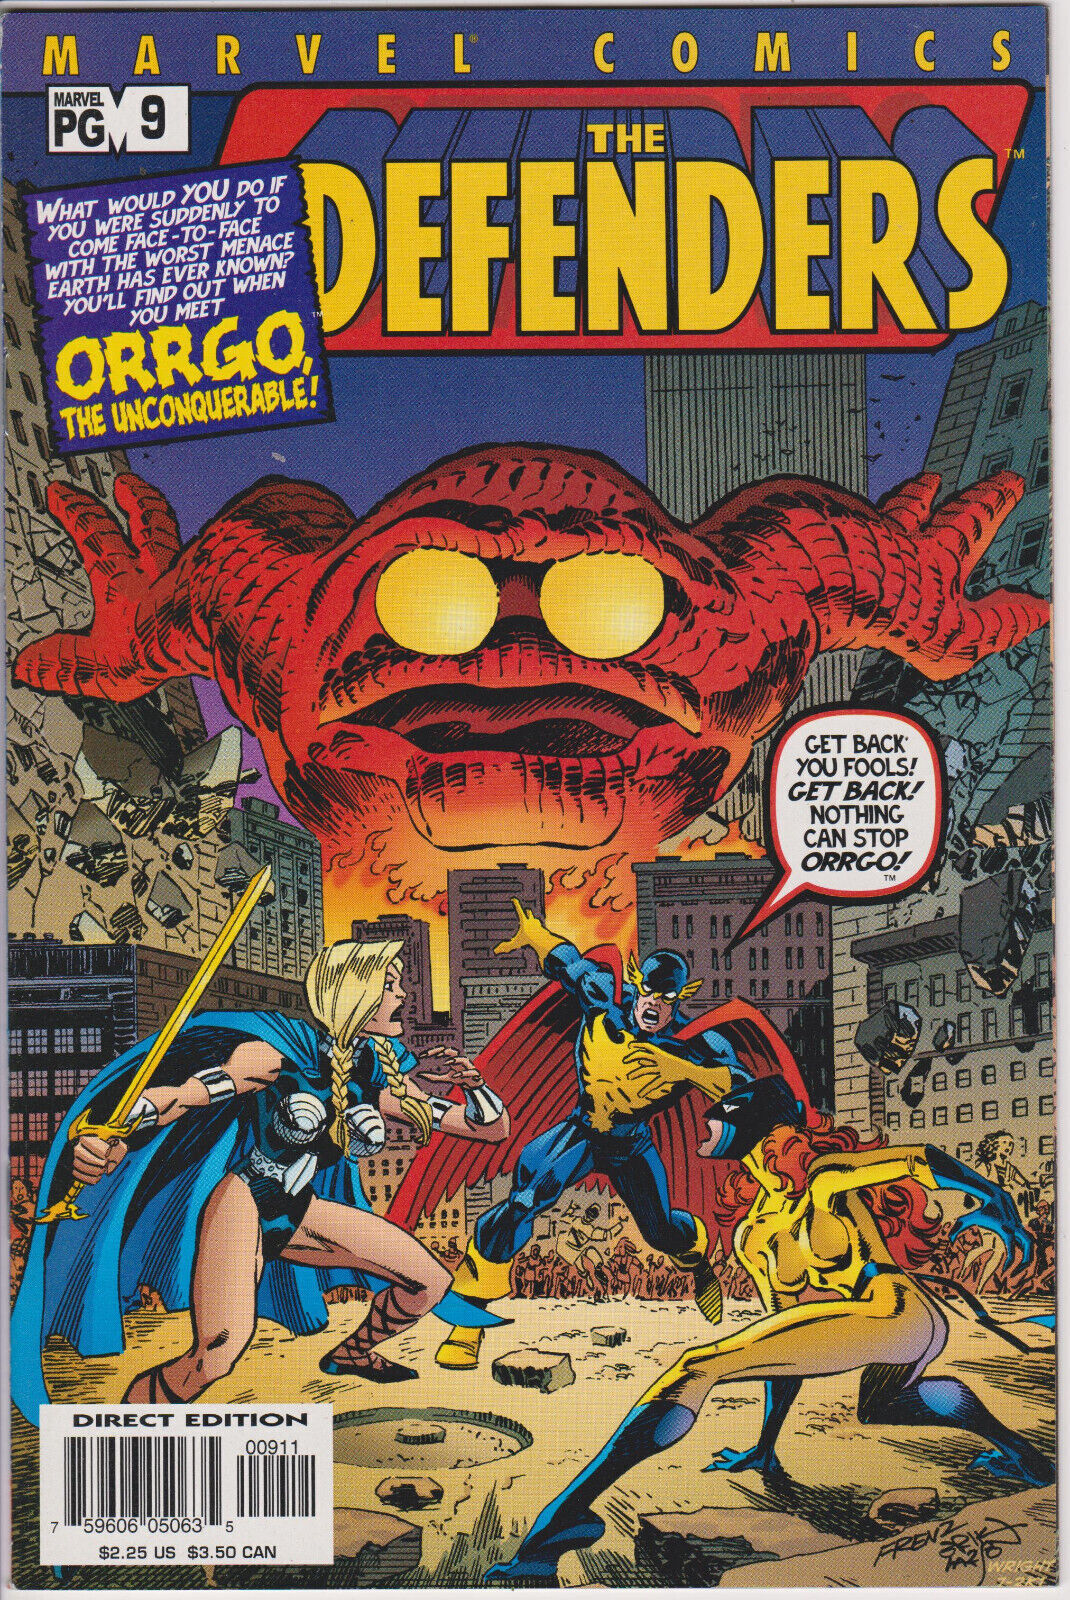 The Defenders #9, Vol. 2 (2001-2002) Marvel Comics,High Grade